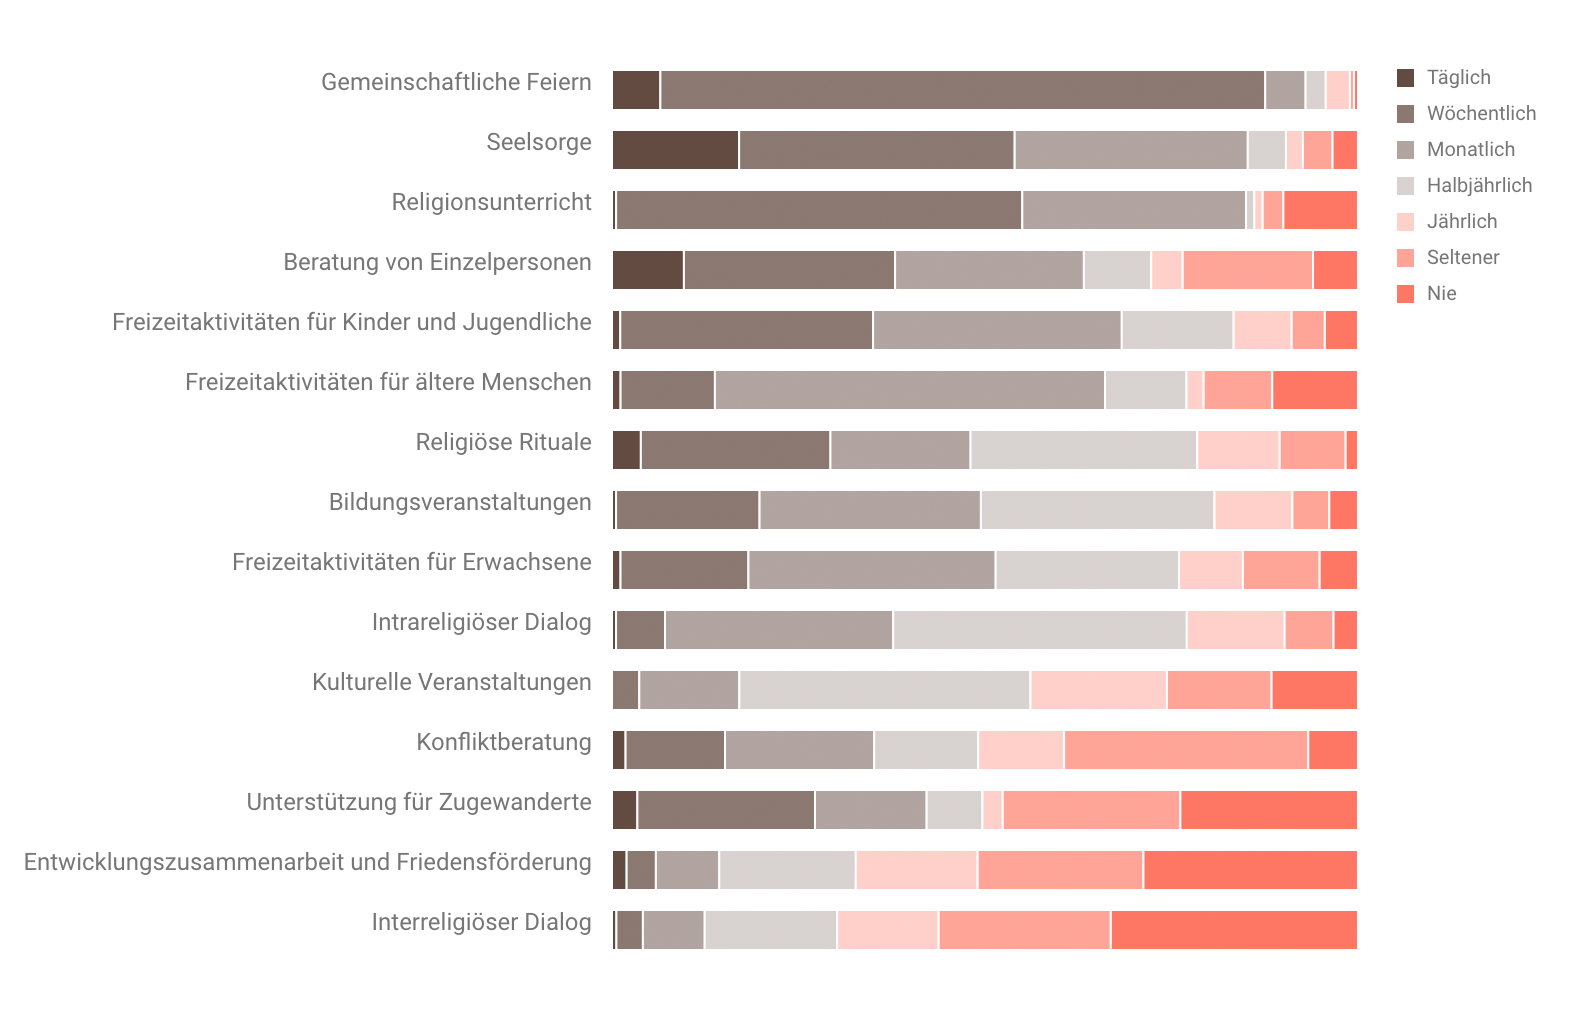 Ergebnisse zu den Tätigkeiten von rund 223 privatrechtlich organisierten Gemeinschaften im Kanton Bern.